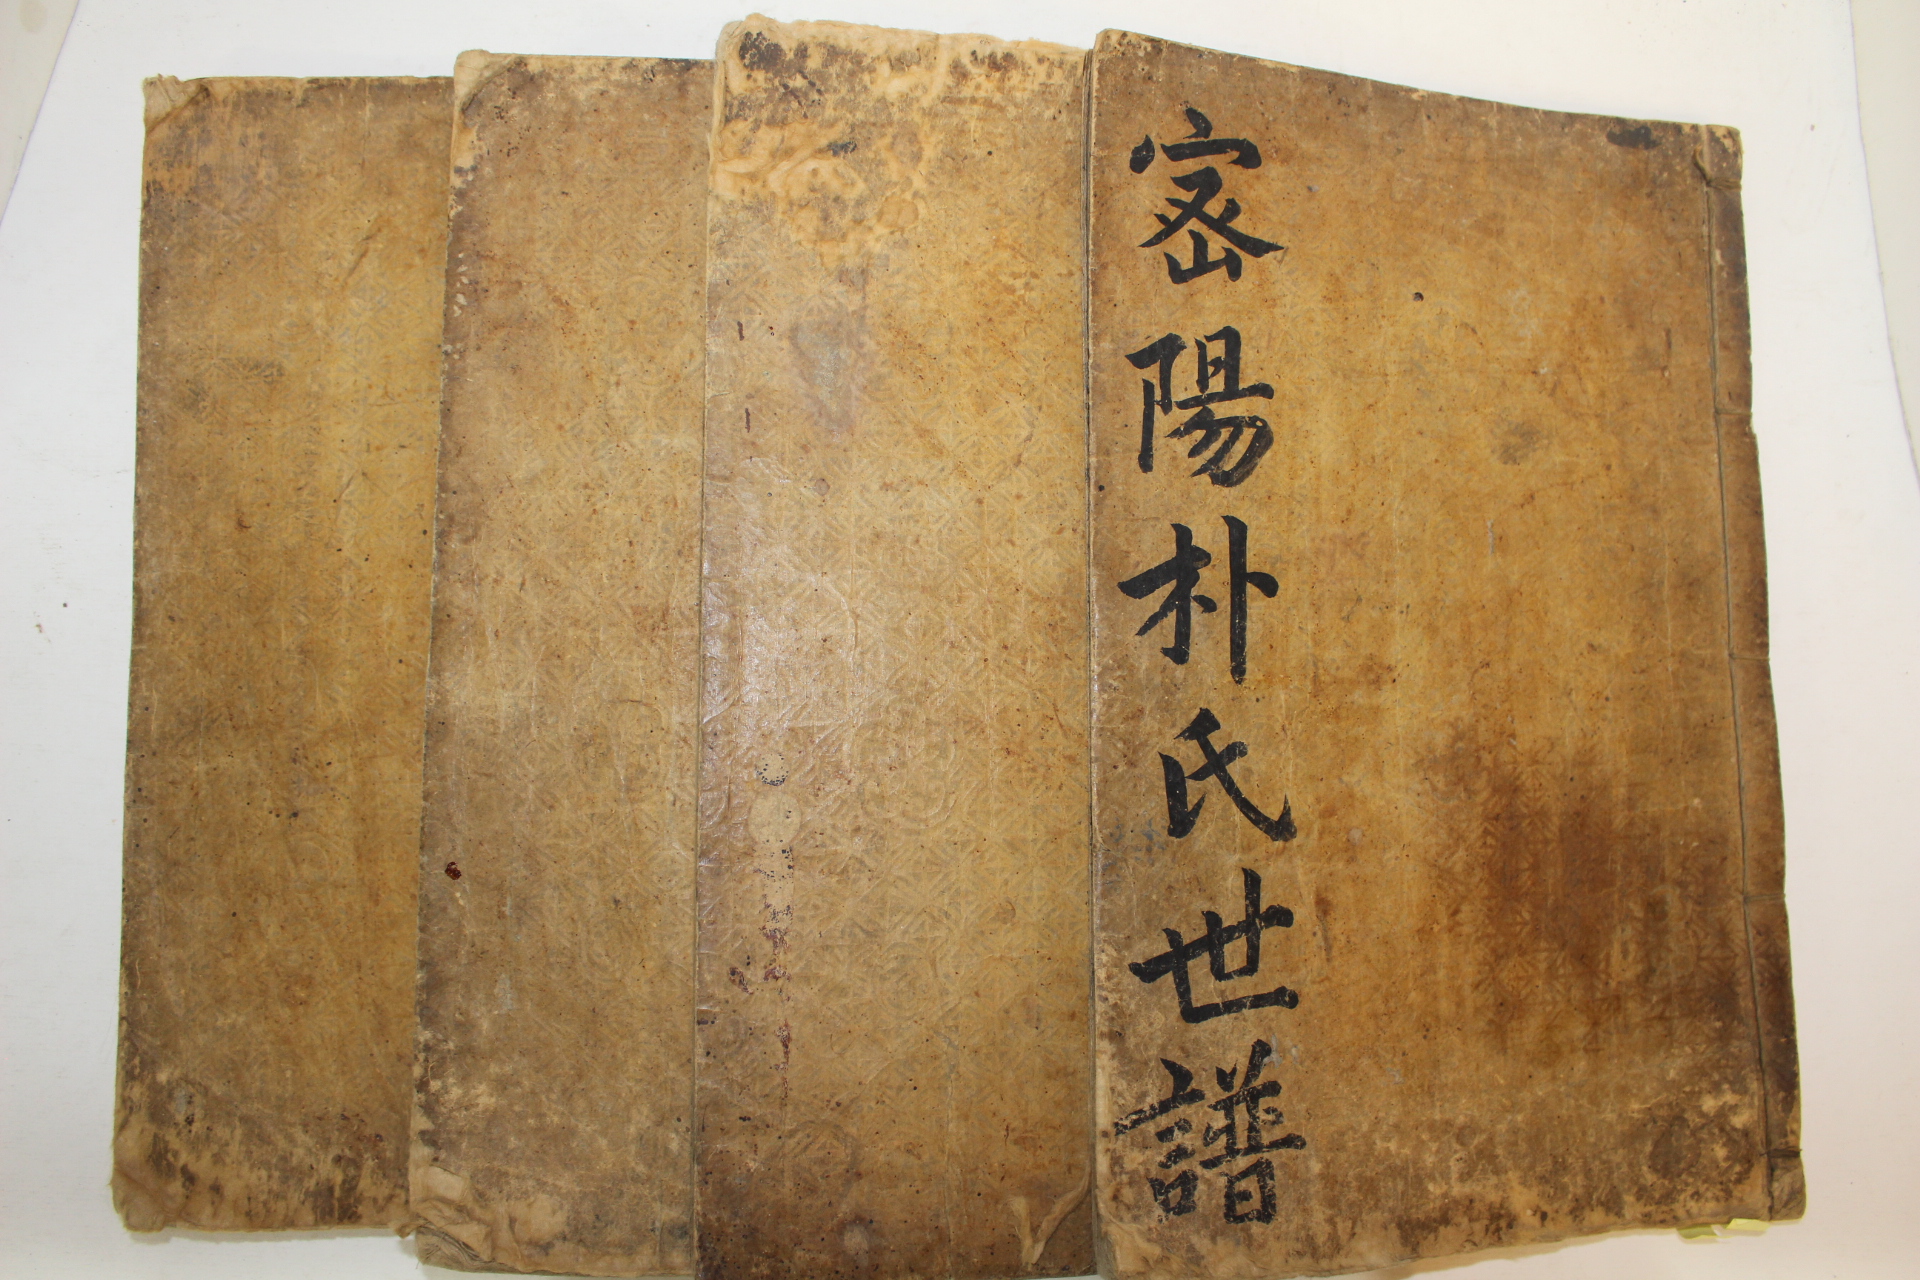 1765년(영조41년) 목판본 밀성박씨세보(密城朴氏世譜) 4책